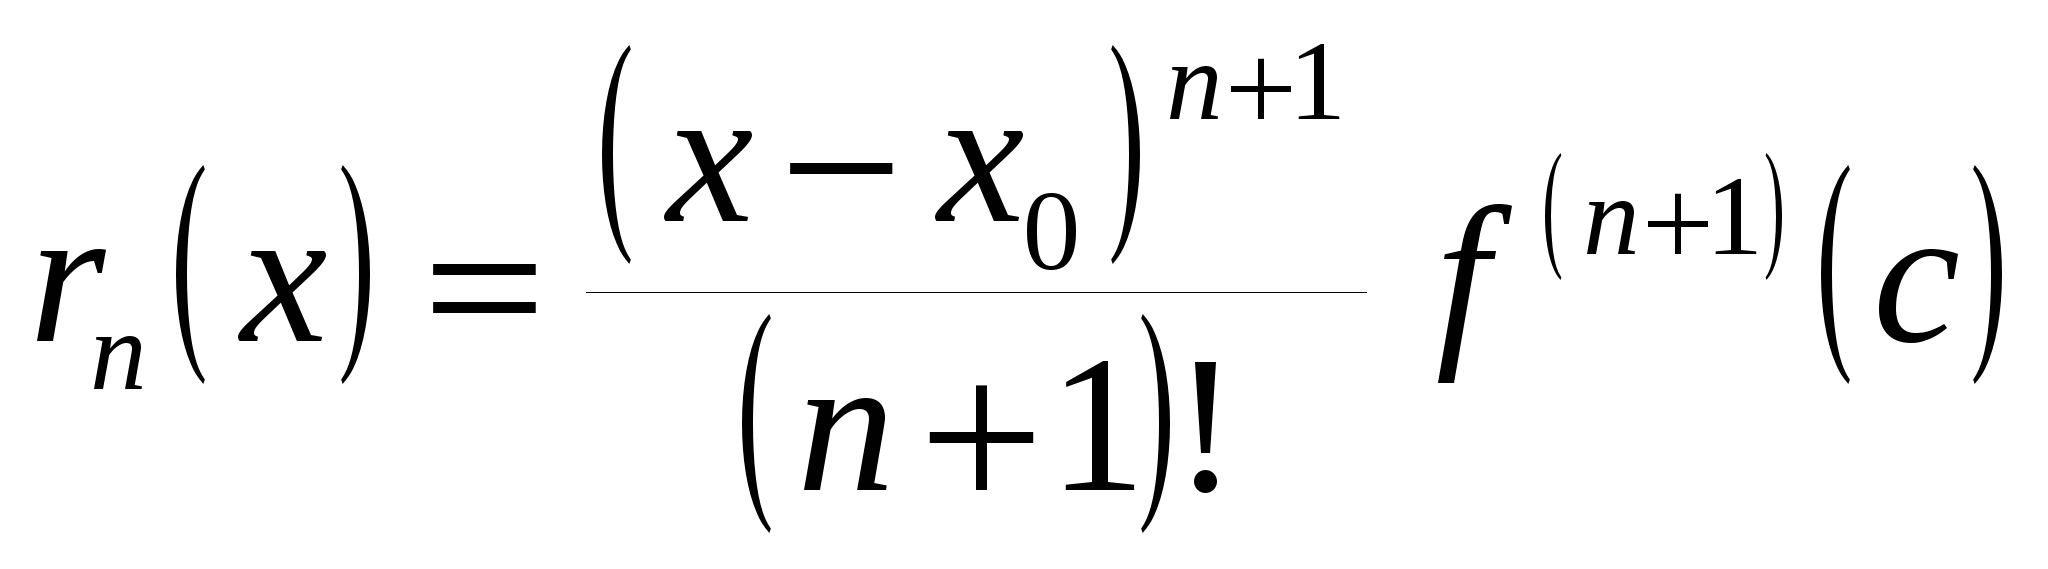 формула с остаточным членом в форме лагранжа фото 4